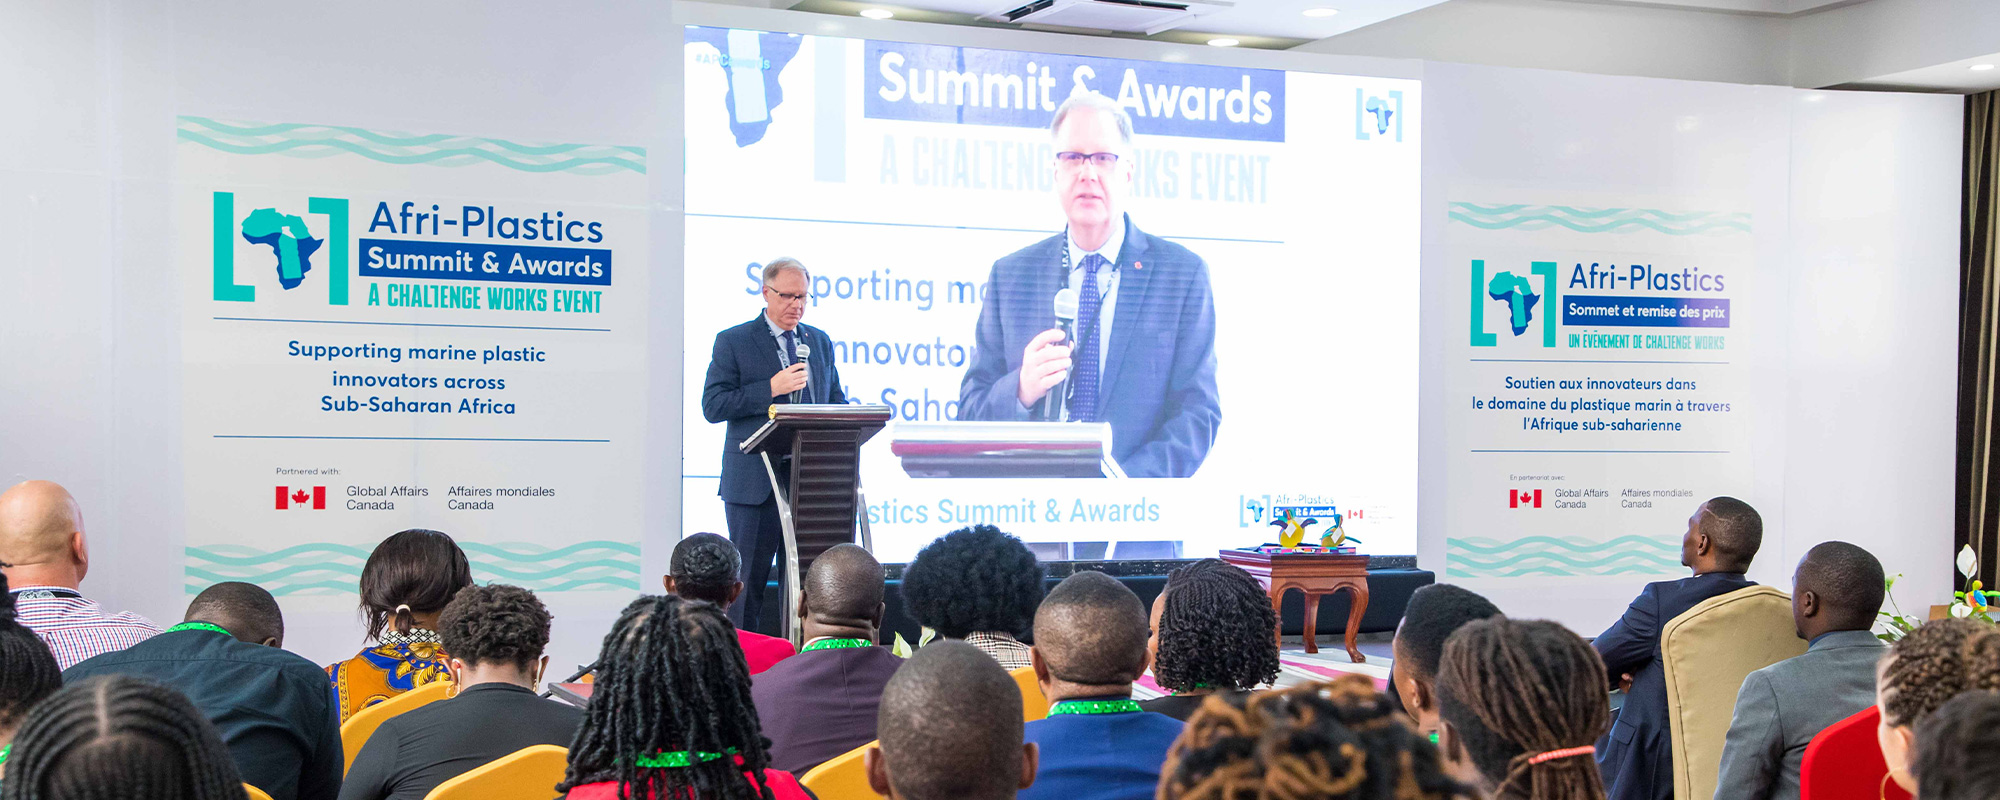 Afri-Plastics Summit & Awards; a Bilingual Hybrid Event Solution by Mint Glint Media